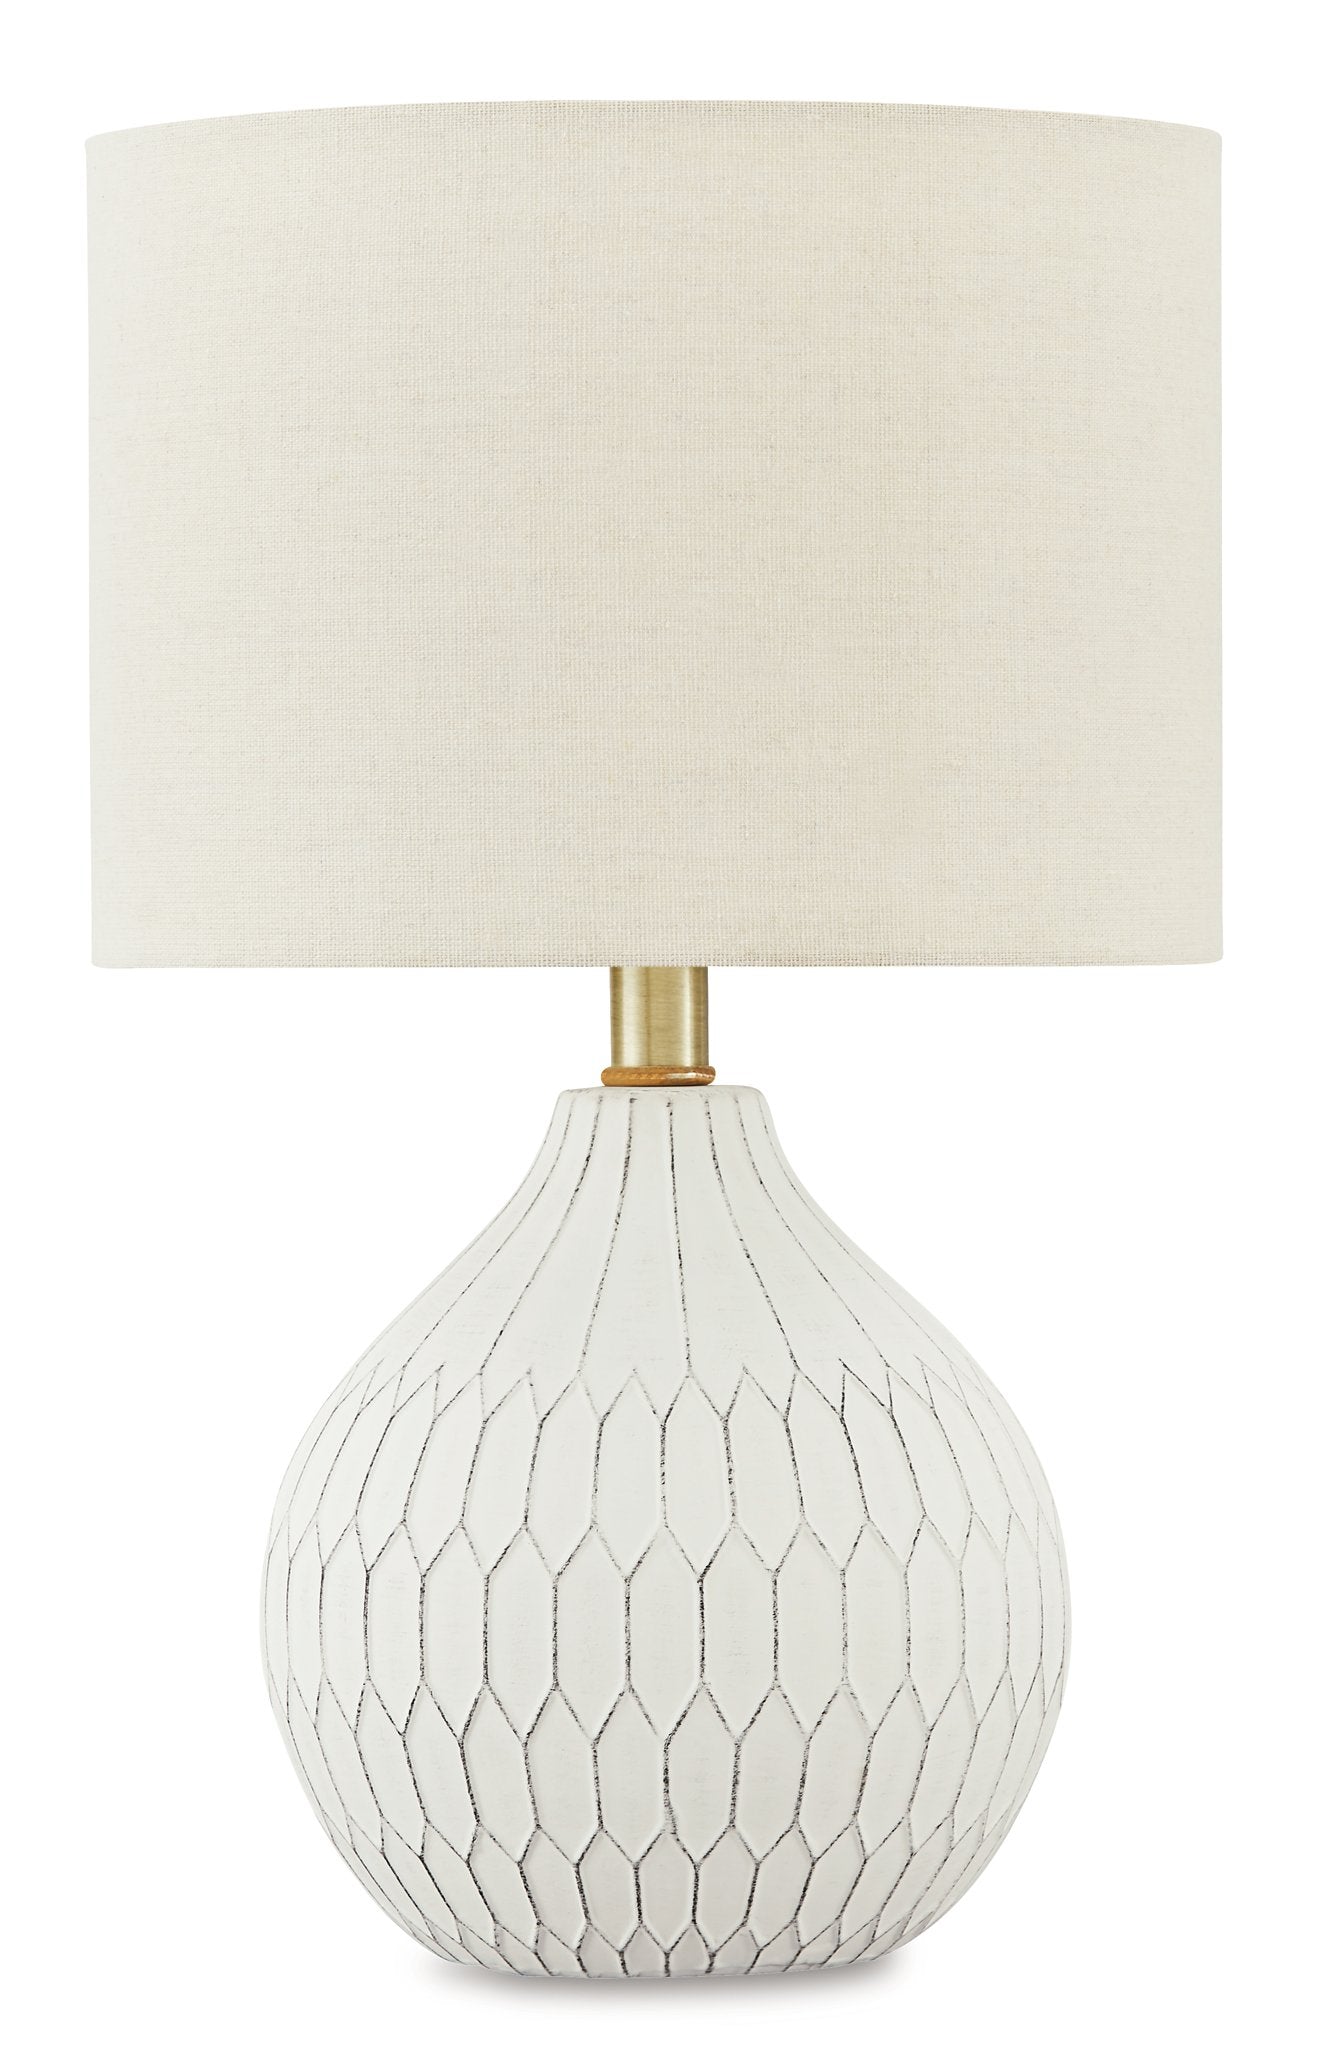 Wardmont Lamp Set - Half Price Furniture